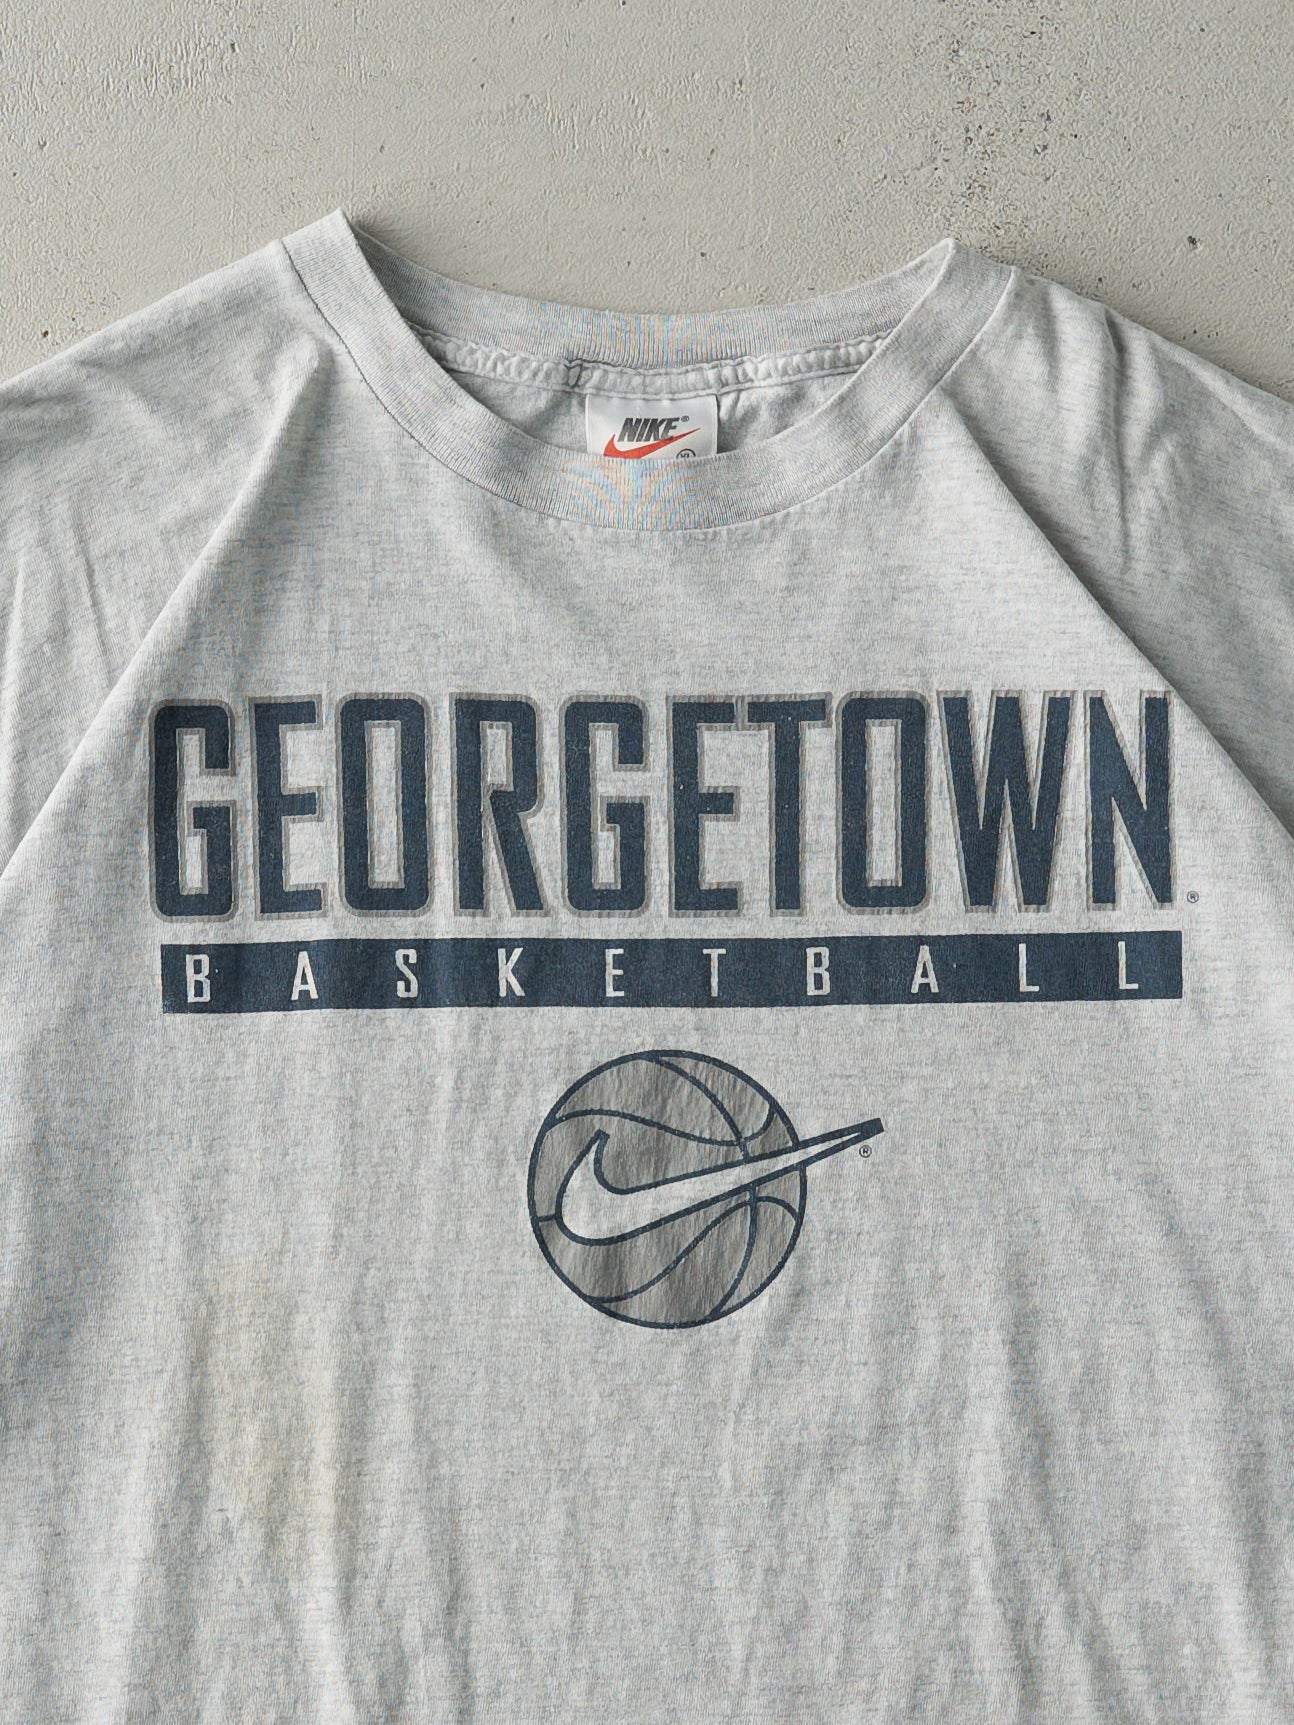 Vintage 90s Heather Grey Georgetown Basketball Nike Tee (L)